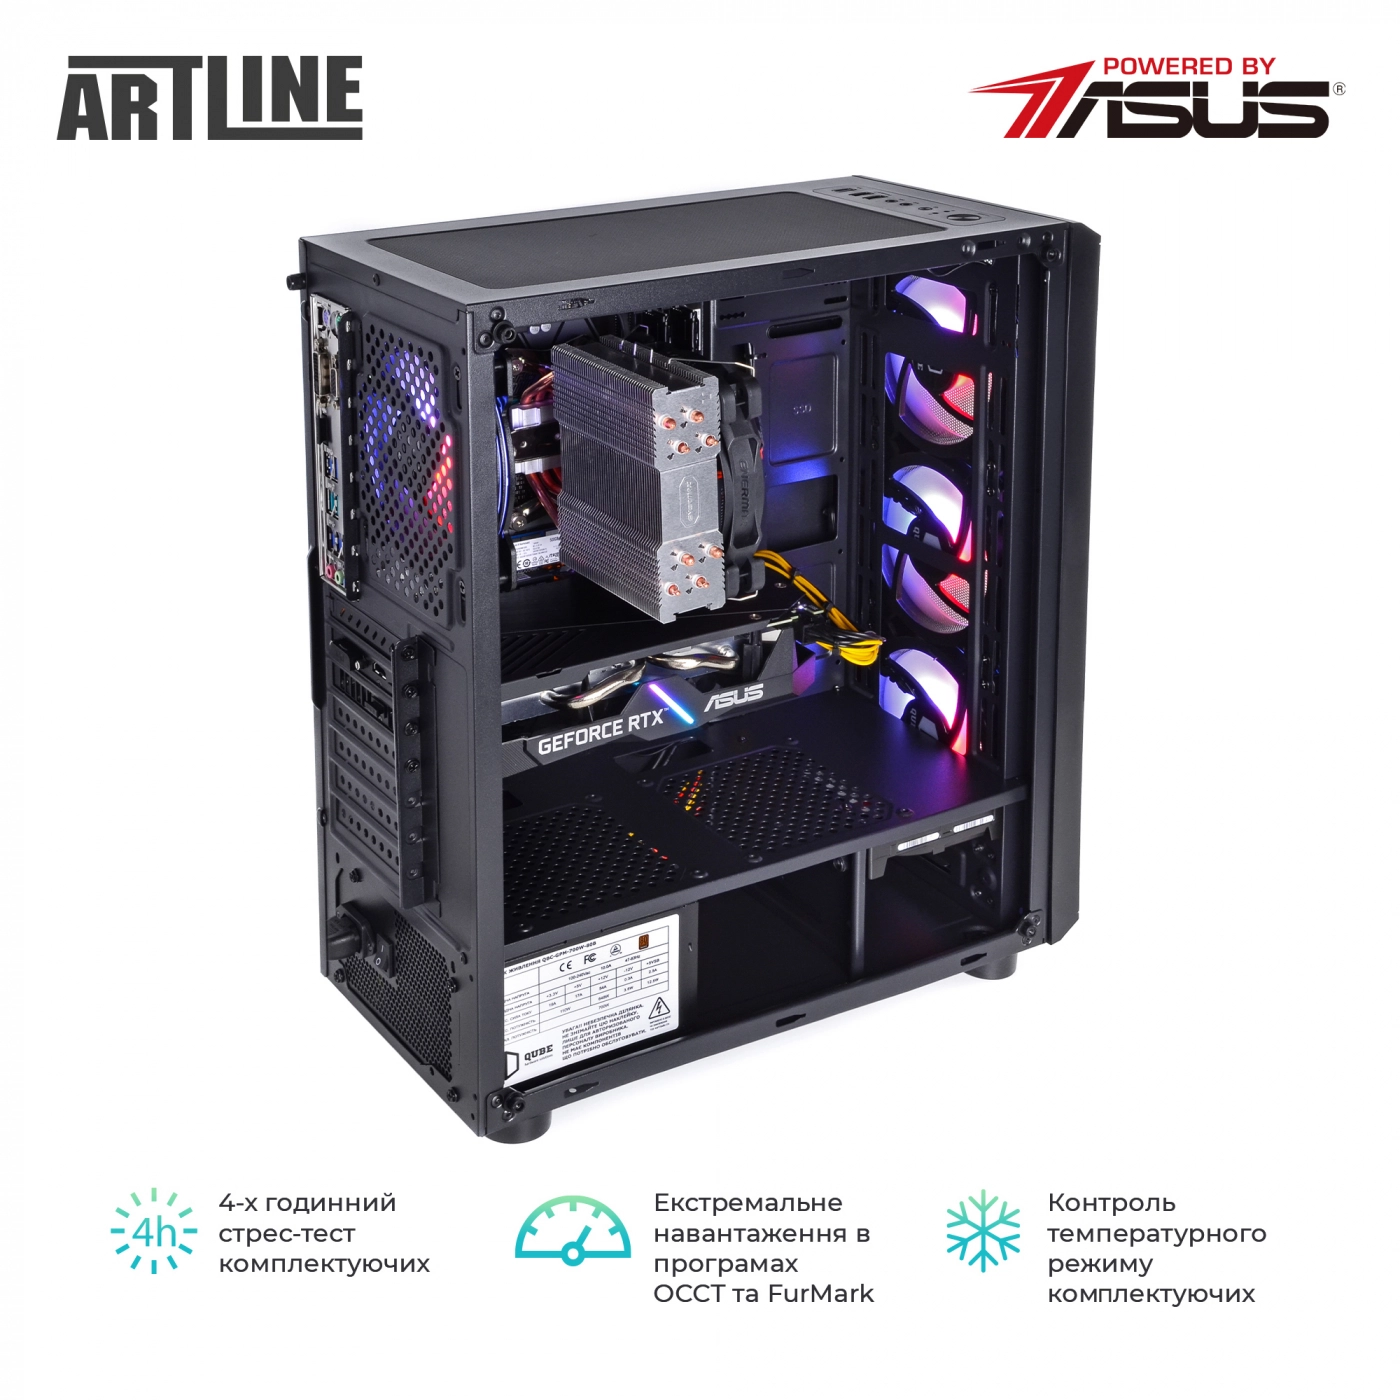 Купить Компьютер ARTLINE Gaming X57v42 - фото 8